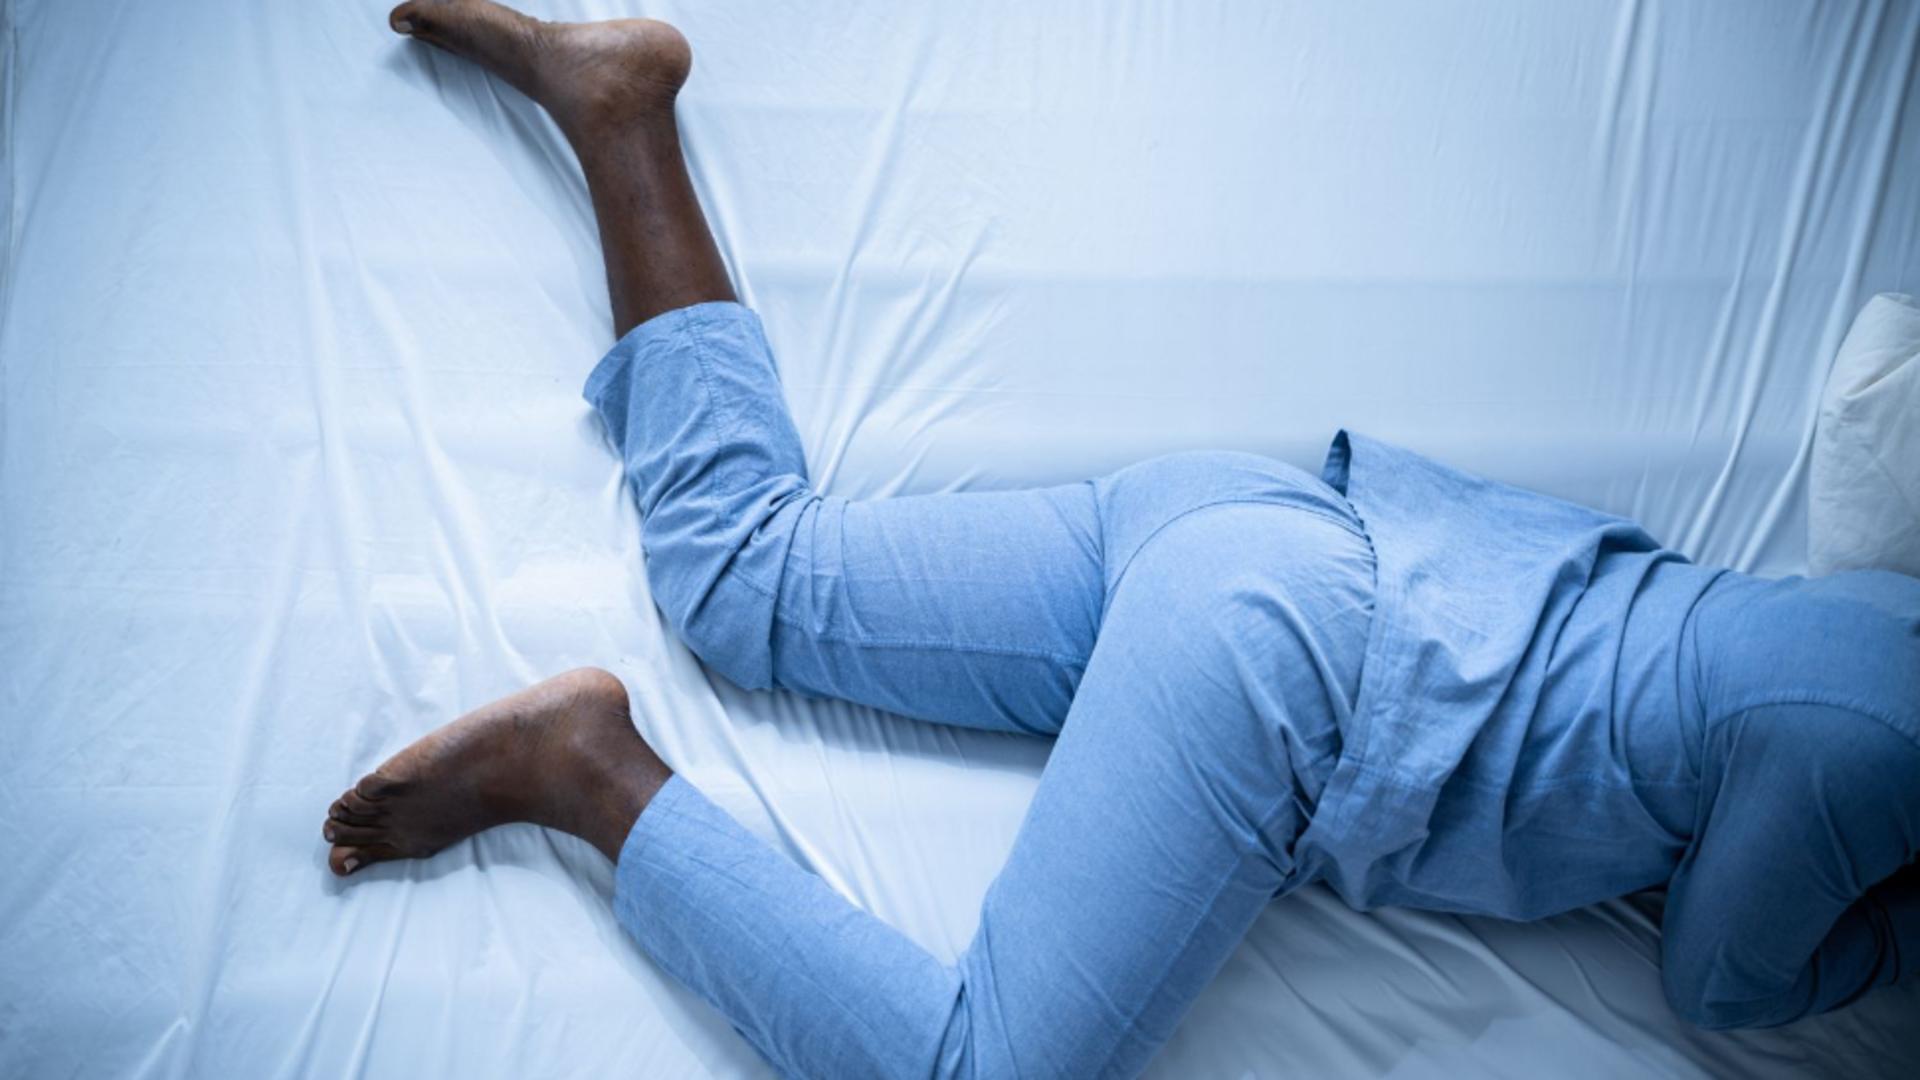 Dai din picior regulat atunci când te odihnești în pat? Acest obicei ar putea ascunde semnele unor afecțiuni serioase